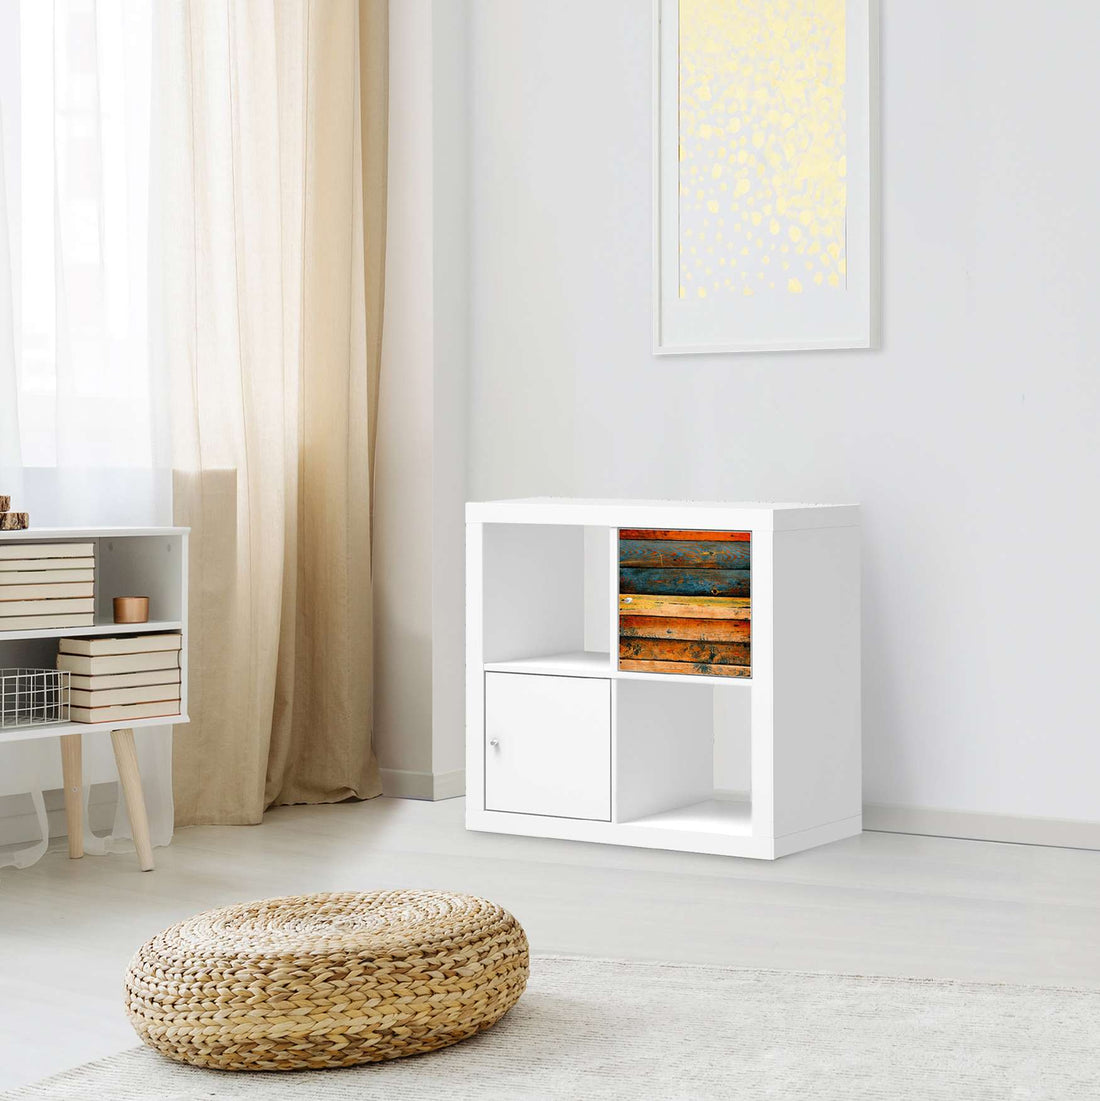 Selbstklebende Folie Wooden - IKEA Kallax Regal 1 Türe - Wohnzimmer